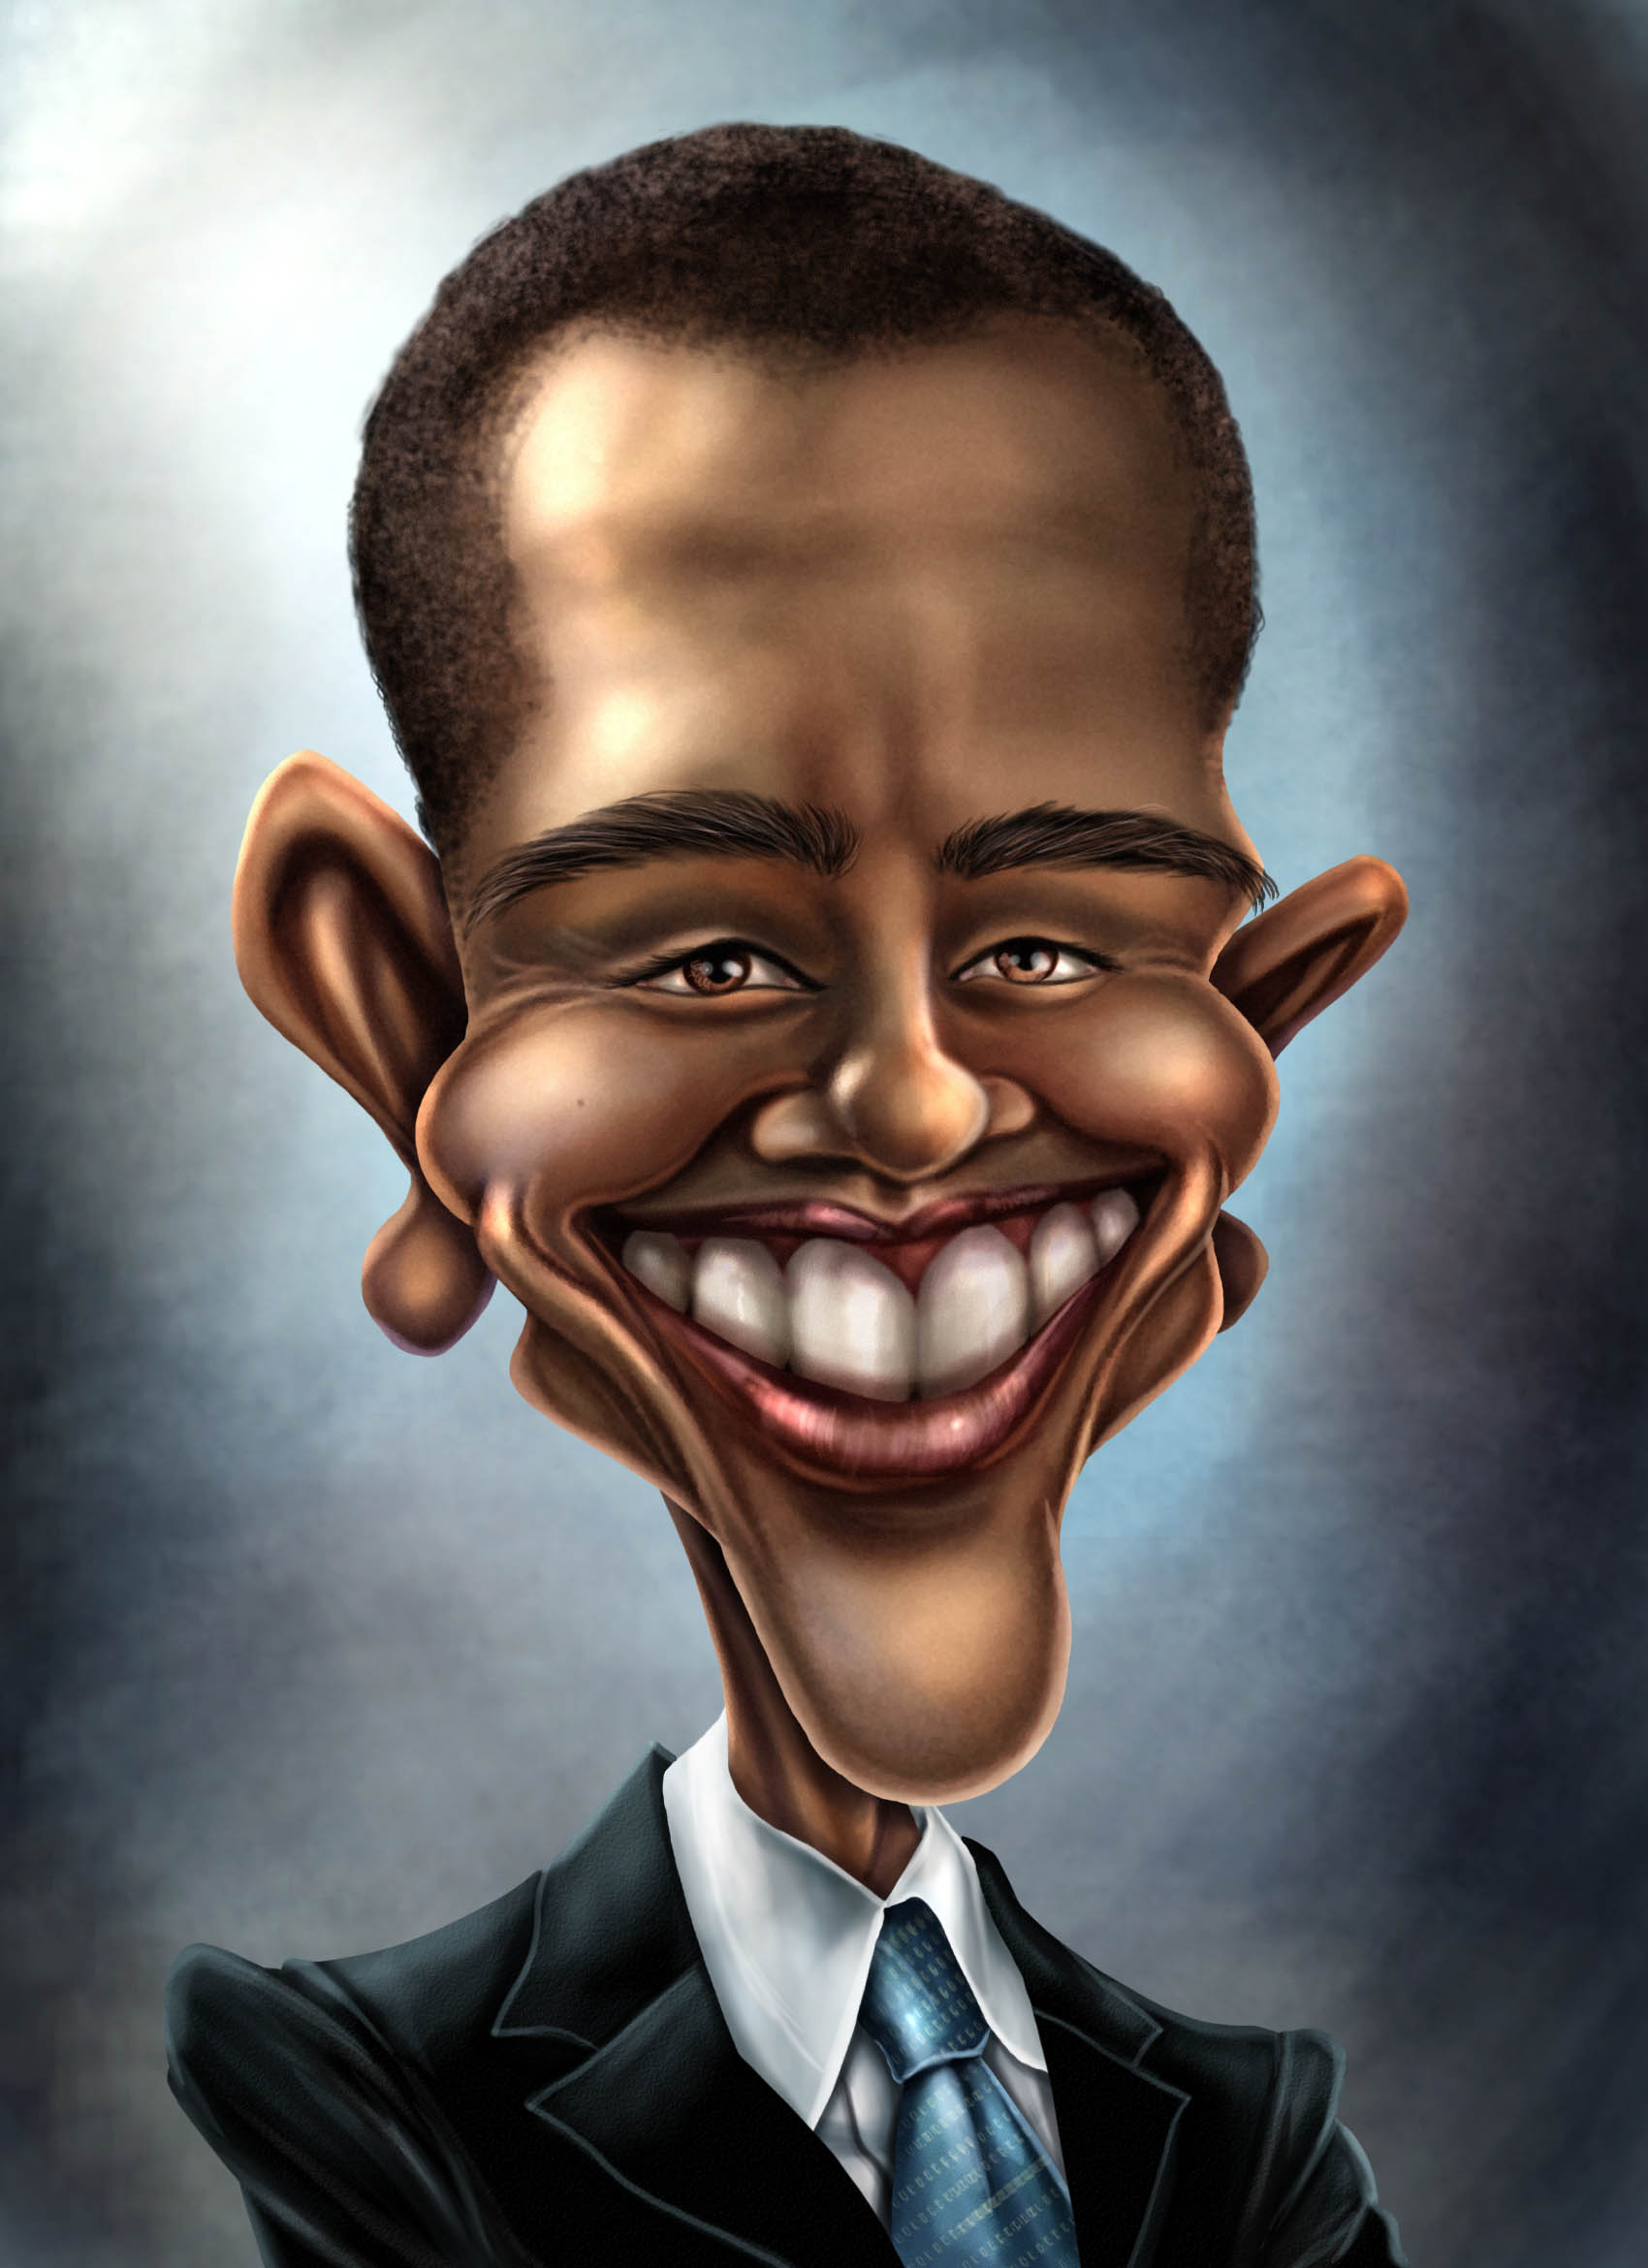 Сатирические шаржи человека. Сатирический портрет Обама. Карикатурные портреты Обамы. Сатирические образы человека. Сатиричечкие образ человека.